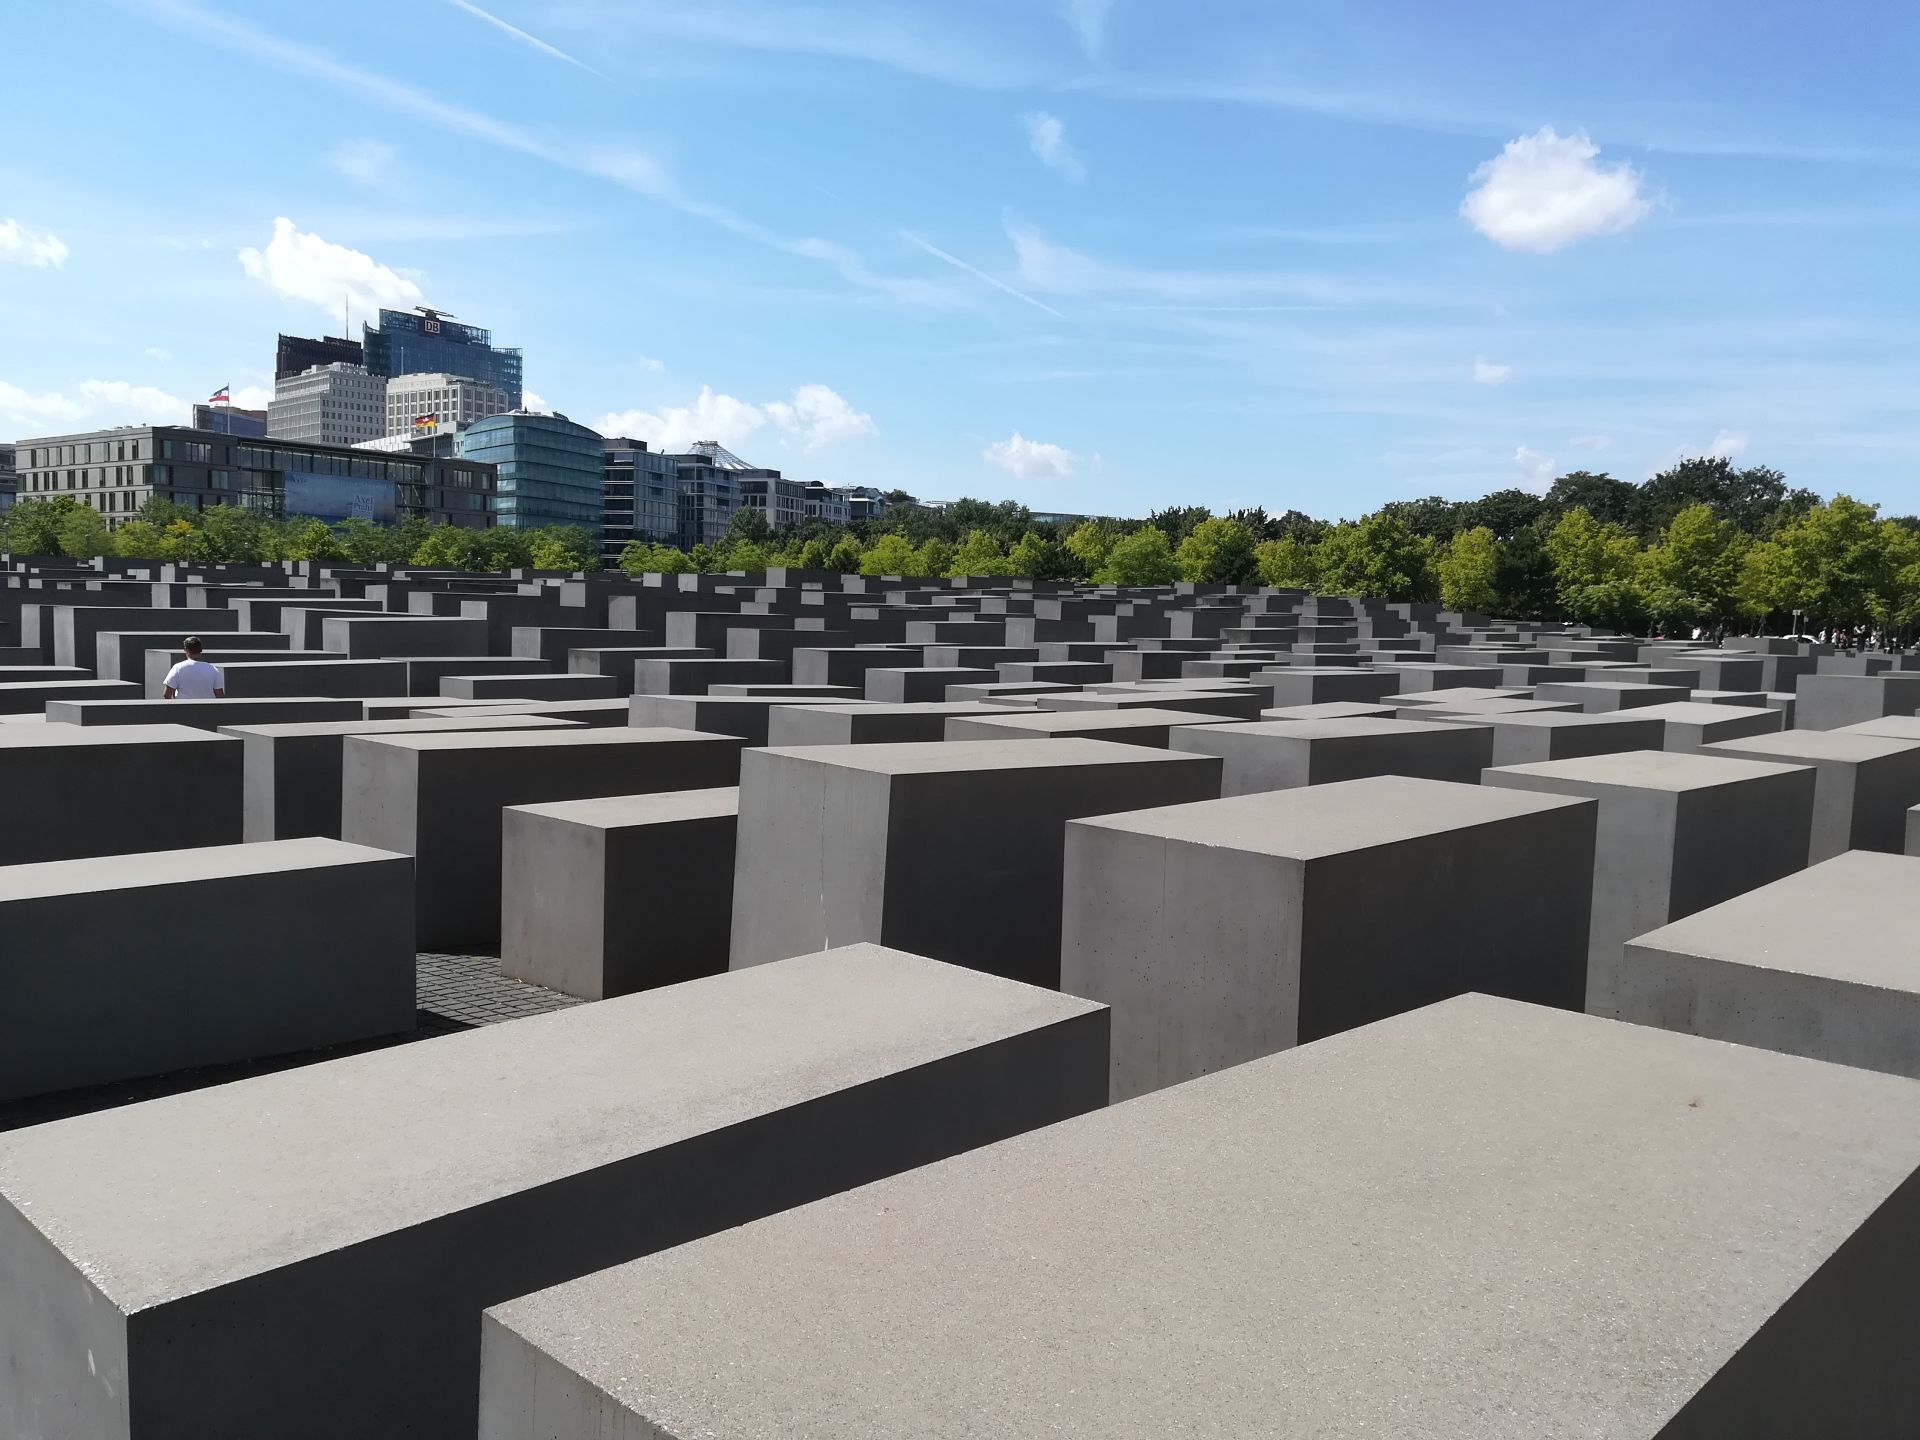 【携程攻略】柏林欧洲被害犹太人纪念碑景点,感觉还不错吧，不过略有点无聊...